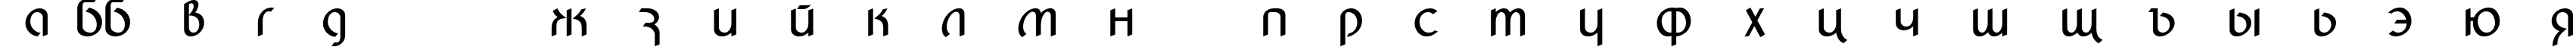 Пример написания русского алфавита шрифтом BilliardsDemo